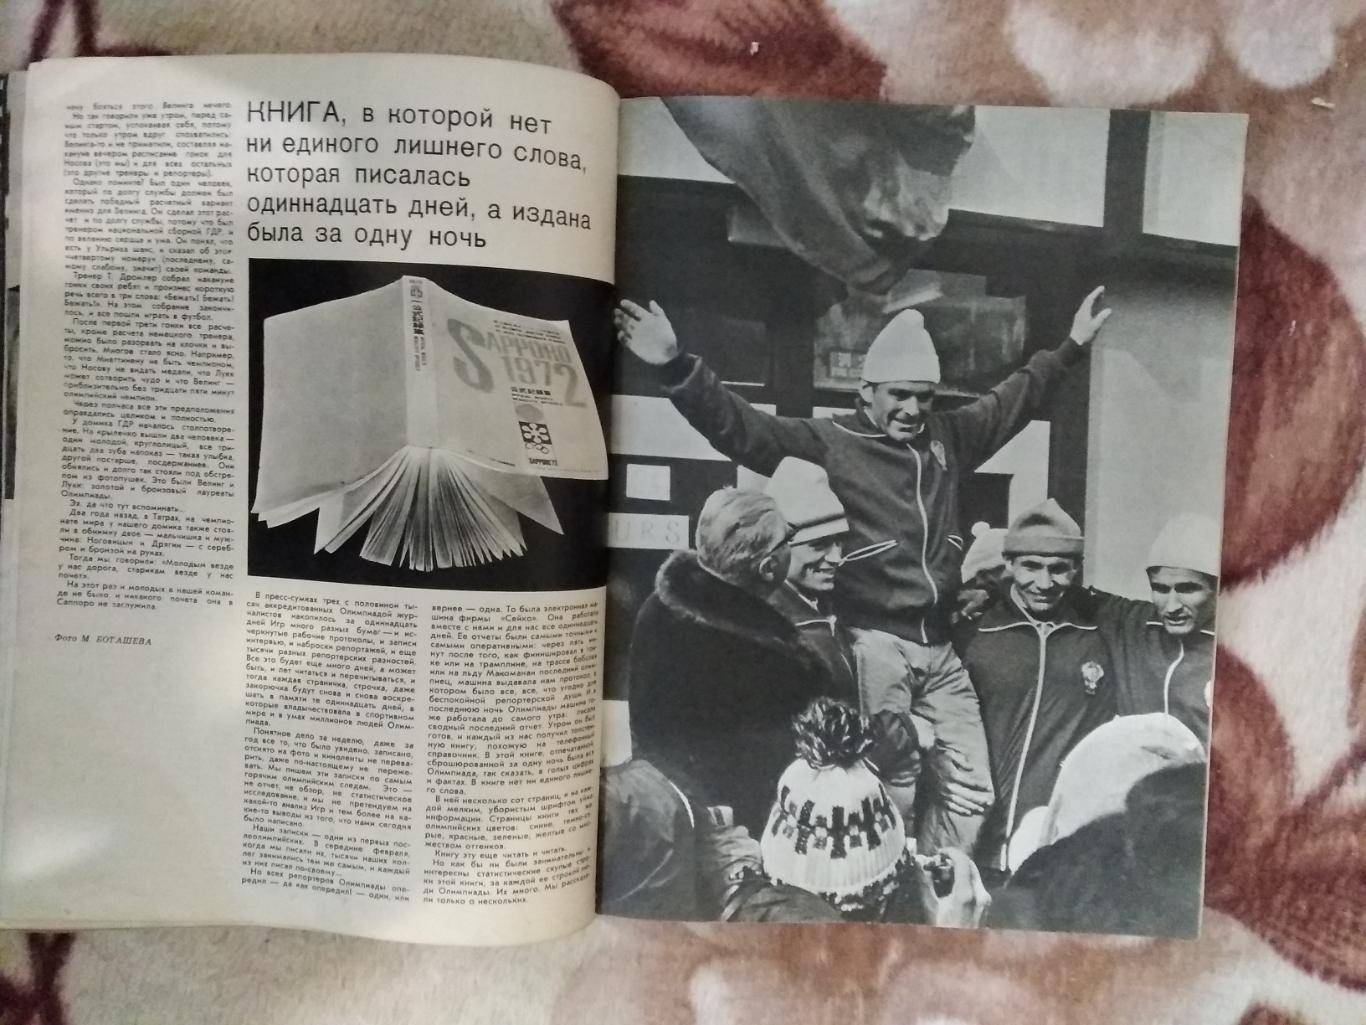 Журнал.Физкультура и спорт № 4 1972 г. (ФиС).(ОИ Саппоро.Япония). 5